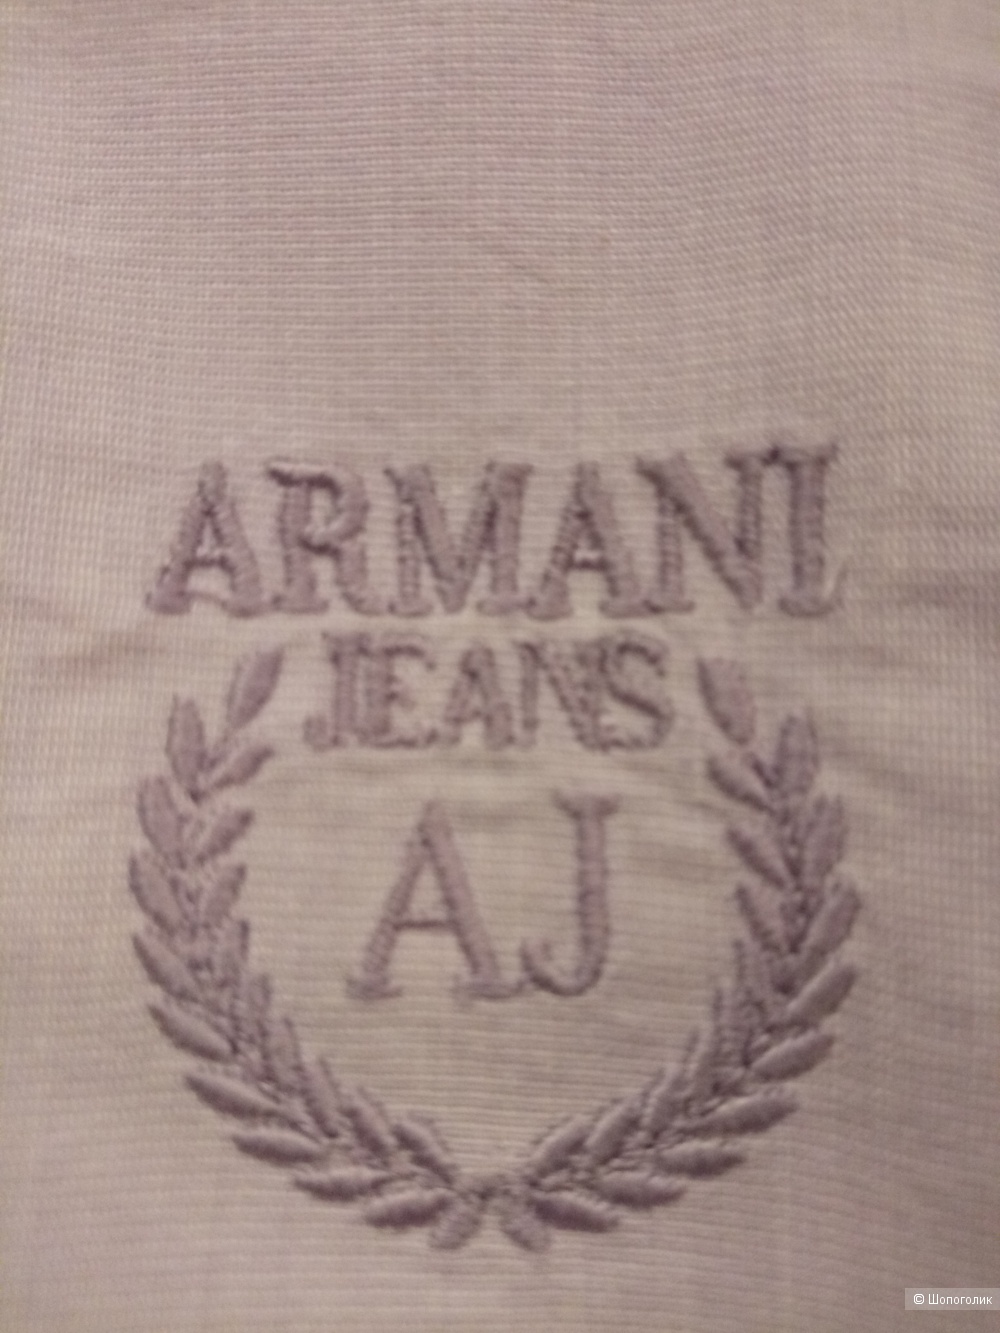 Рубашка ARMANI Jeans, размер 44-46 рос